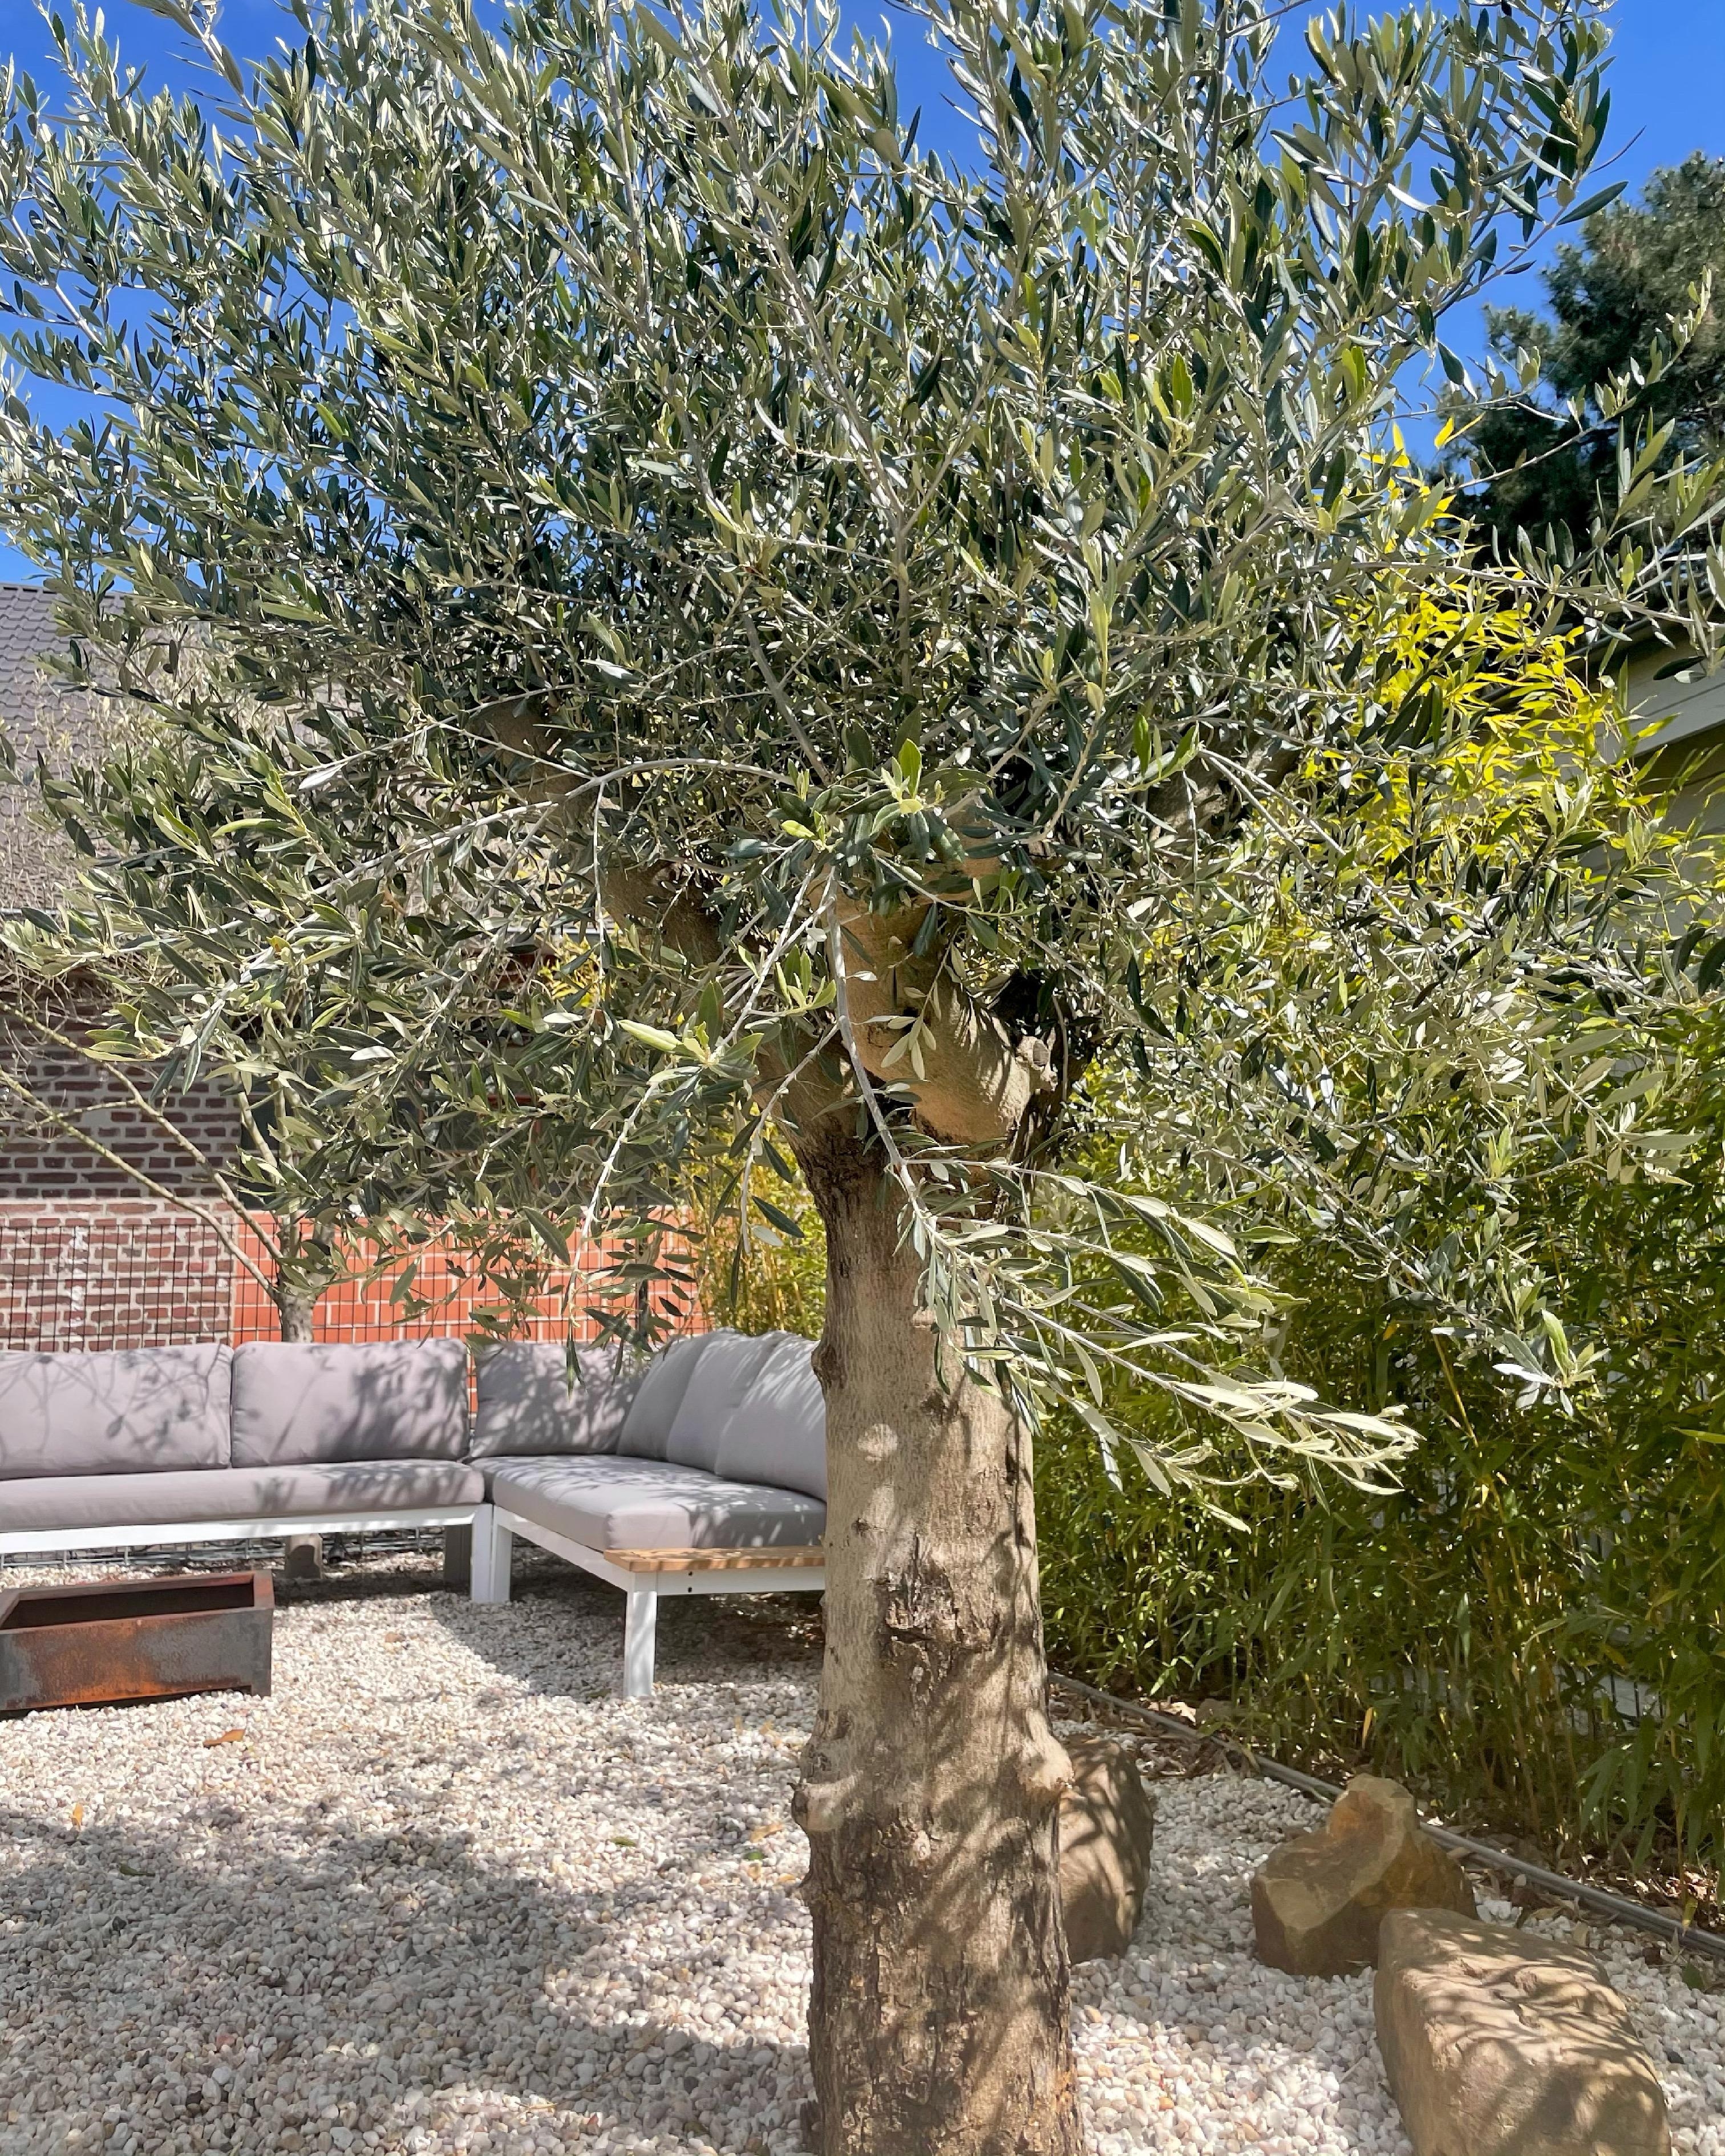 #livingchallenge #outdoor 
Der neue Olivenbaum durfte auch neu einziehen 🤍